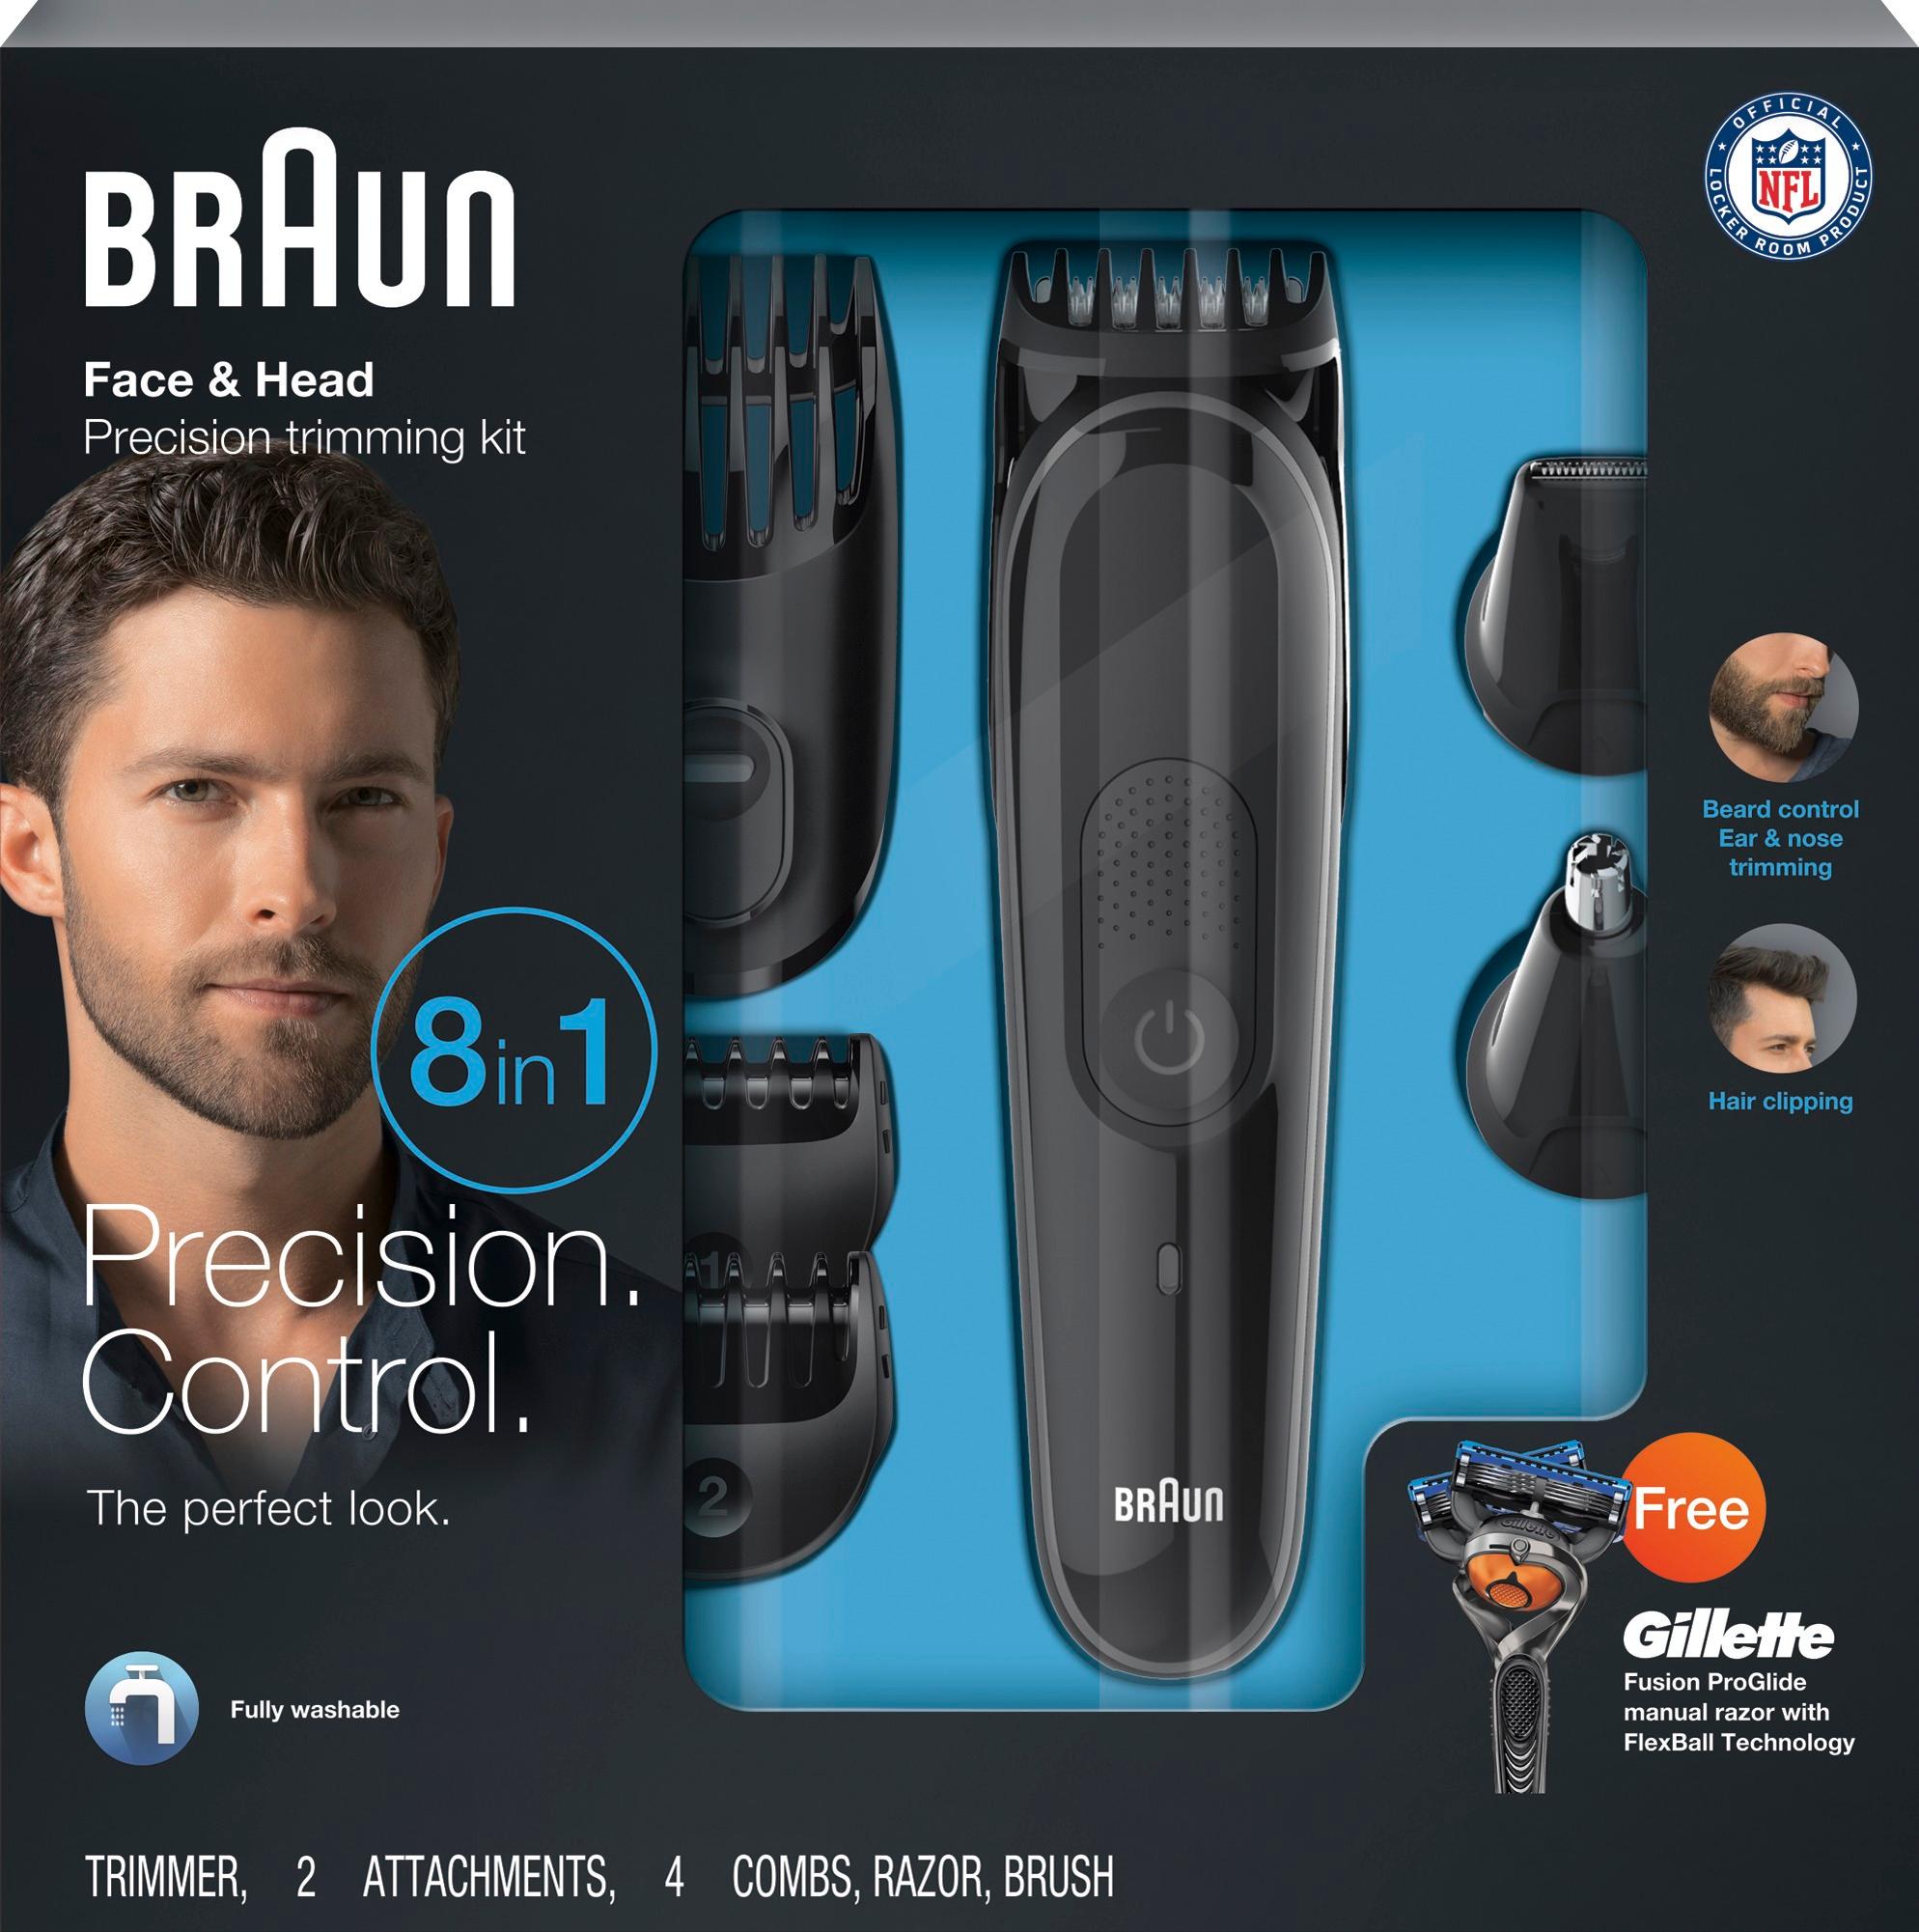 braun multi grooming kit in black